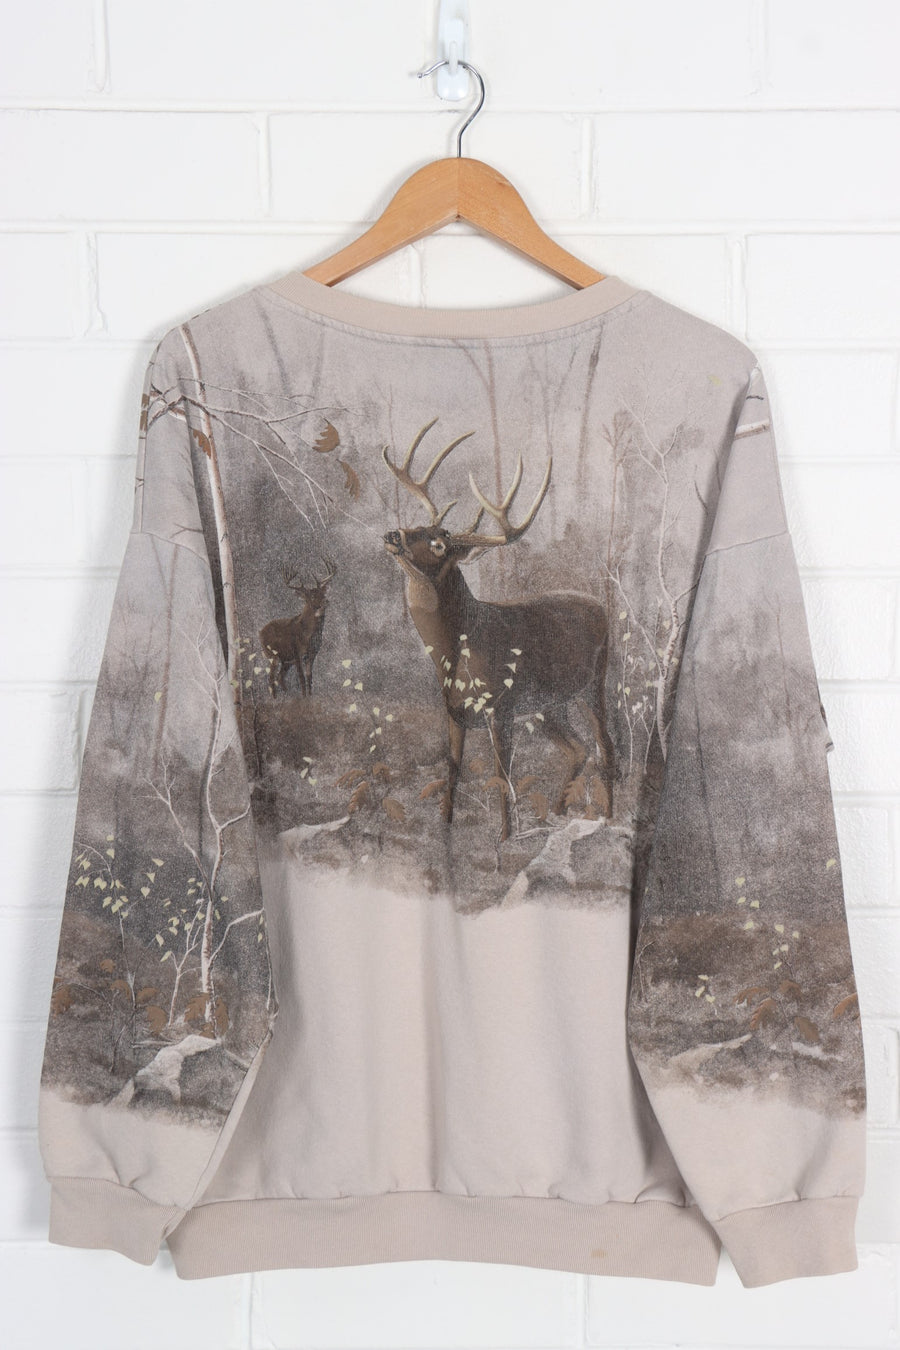 Forest Deers All Over Print Henley Sweatshirt (XL)